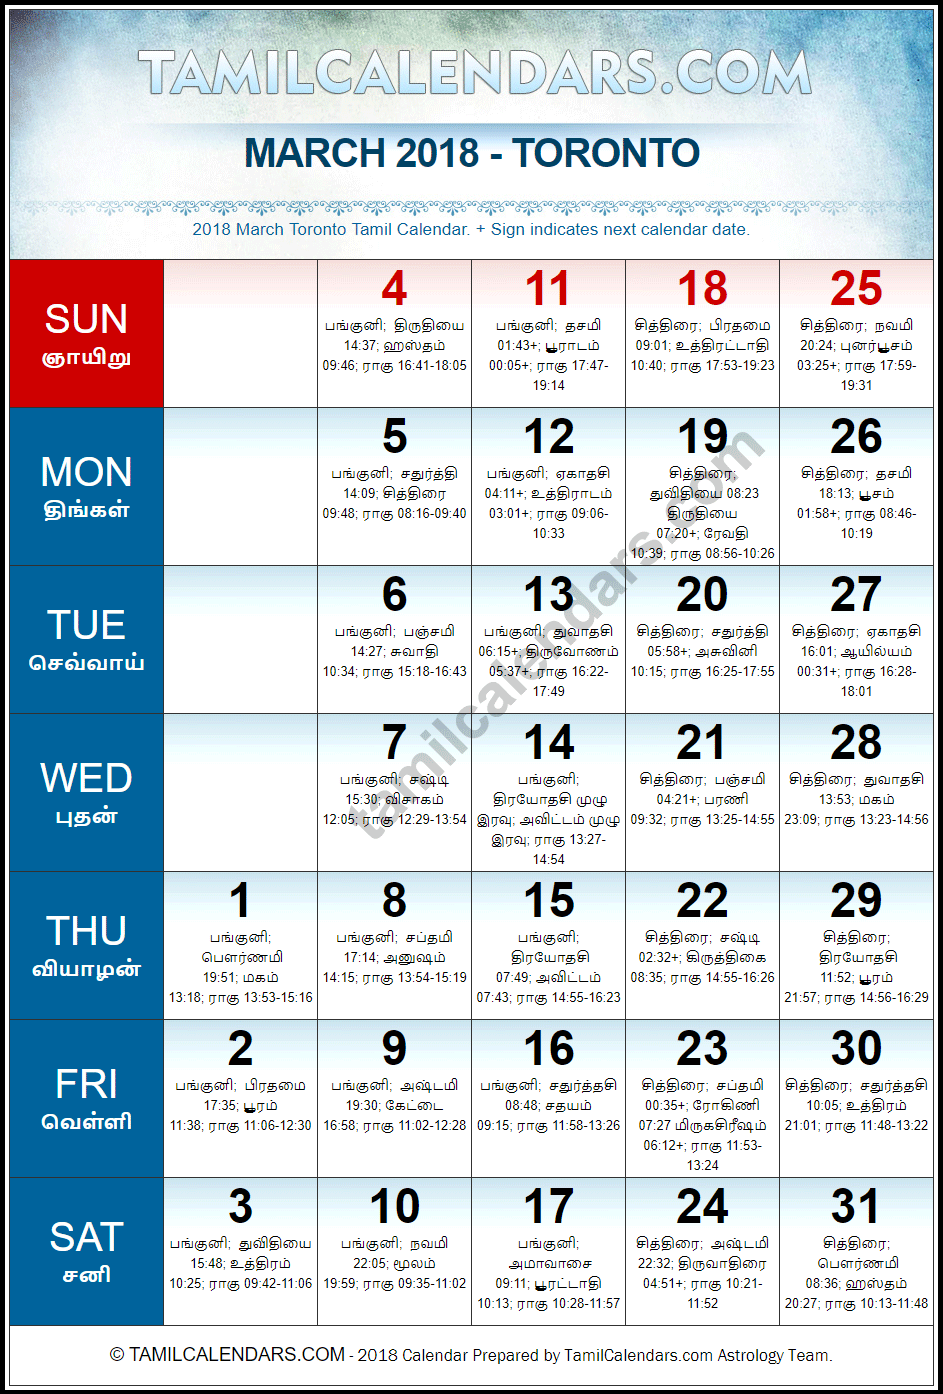 March 2018 Tamil Calendar for Toronto, Canada